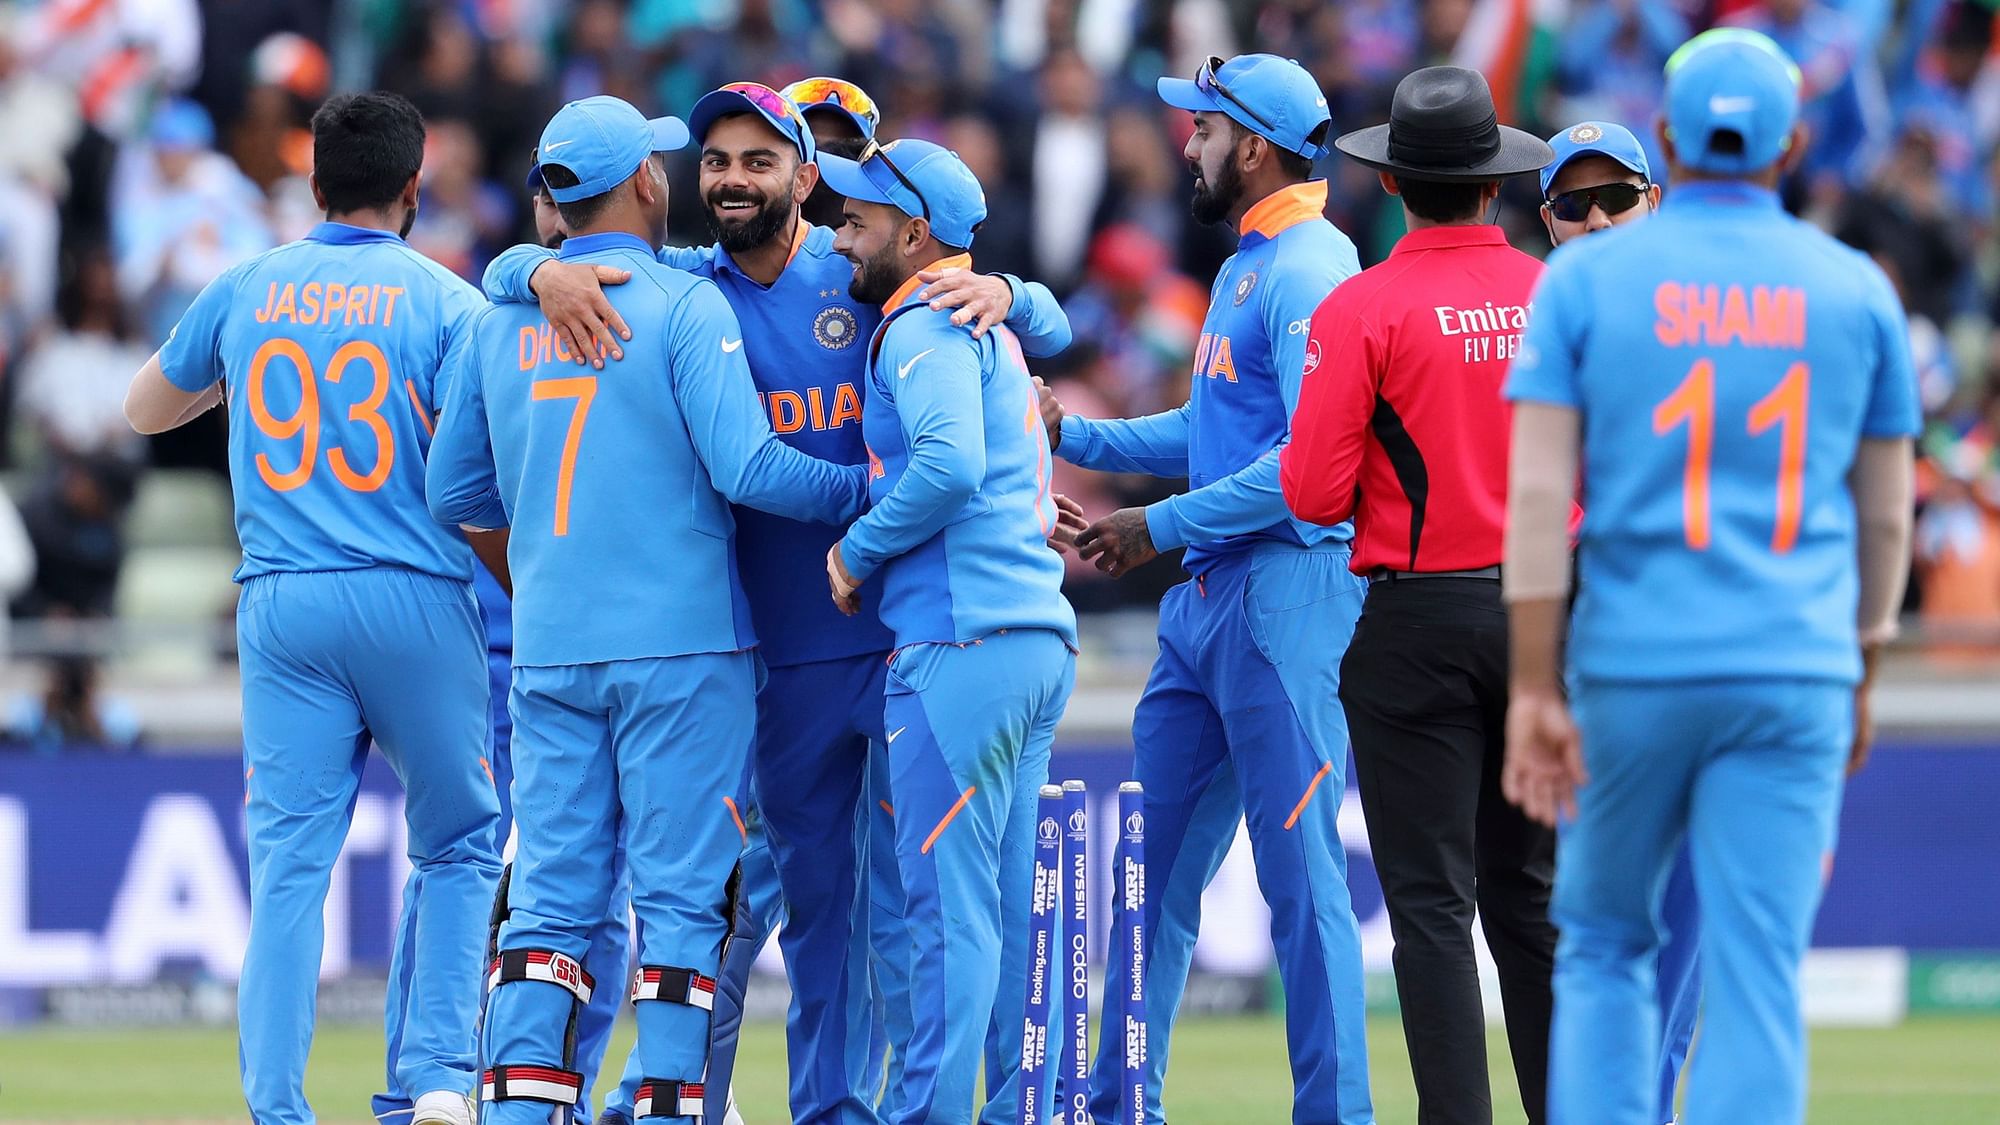 भारत ने लगातार तीसरी बार वर्ल्ड कप के सेमीफाइनल में जगह बनाई है.